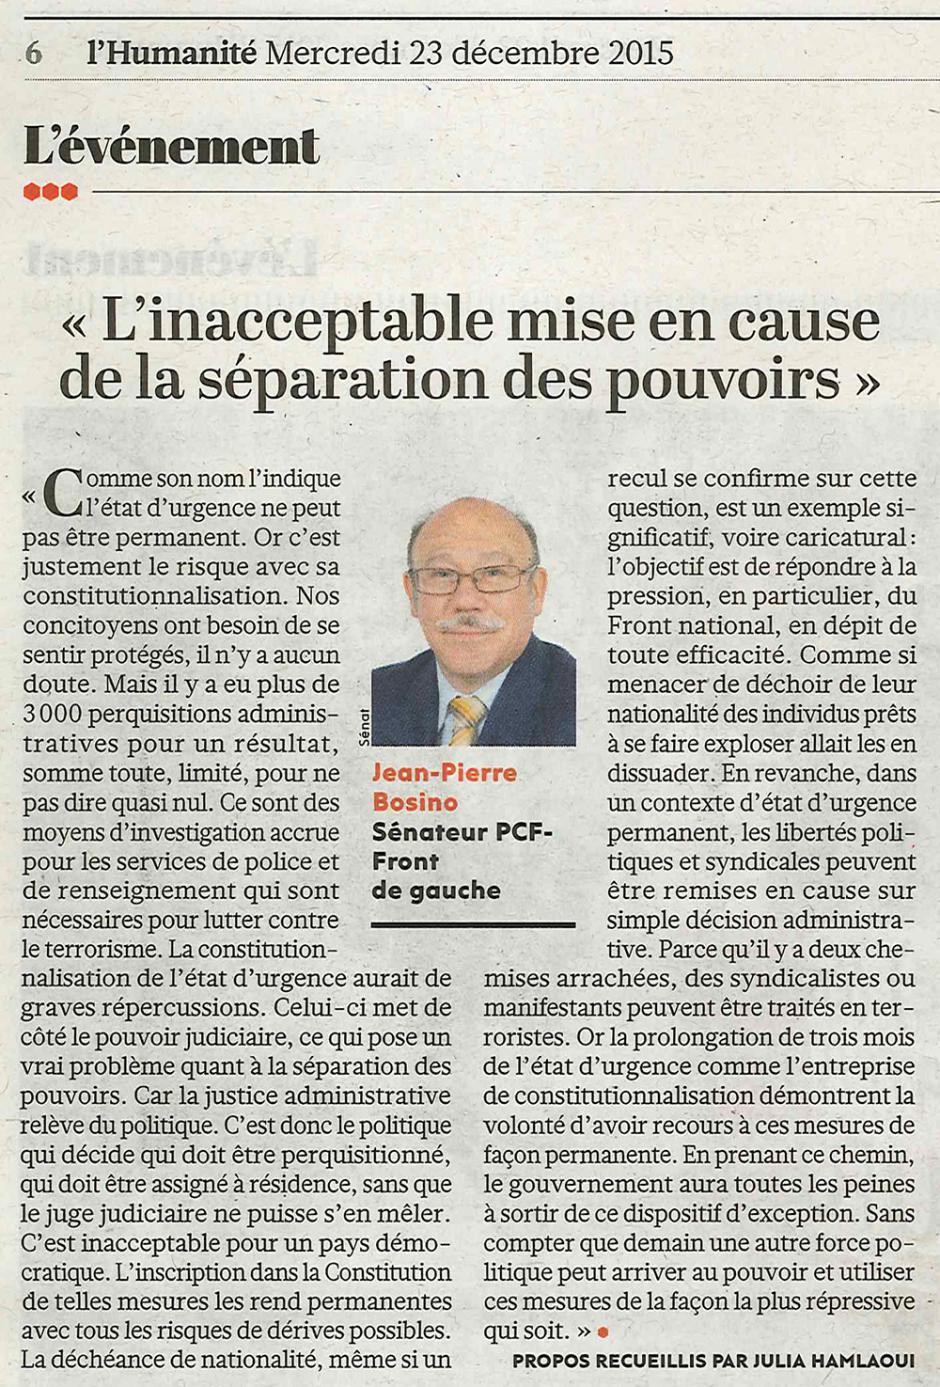 Jean-Pierre Bosino : « L'inacceptable mise en cause de la séparation des pouvoirs » - L'Humanité, 23 décembre 2015